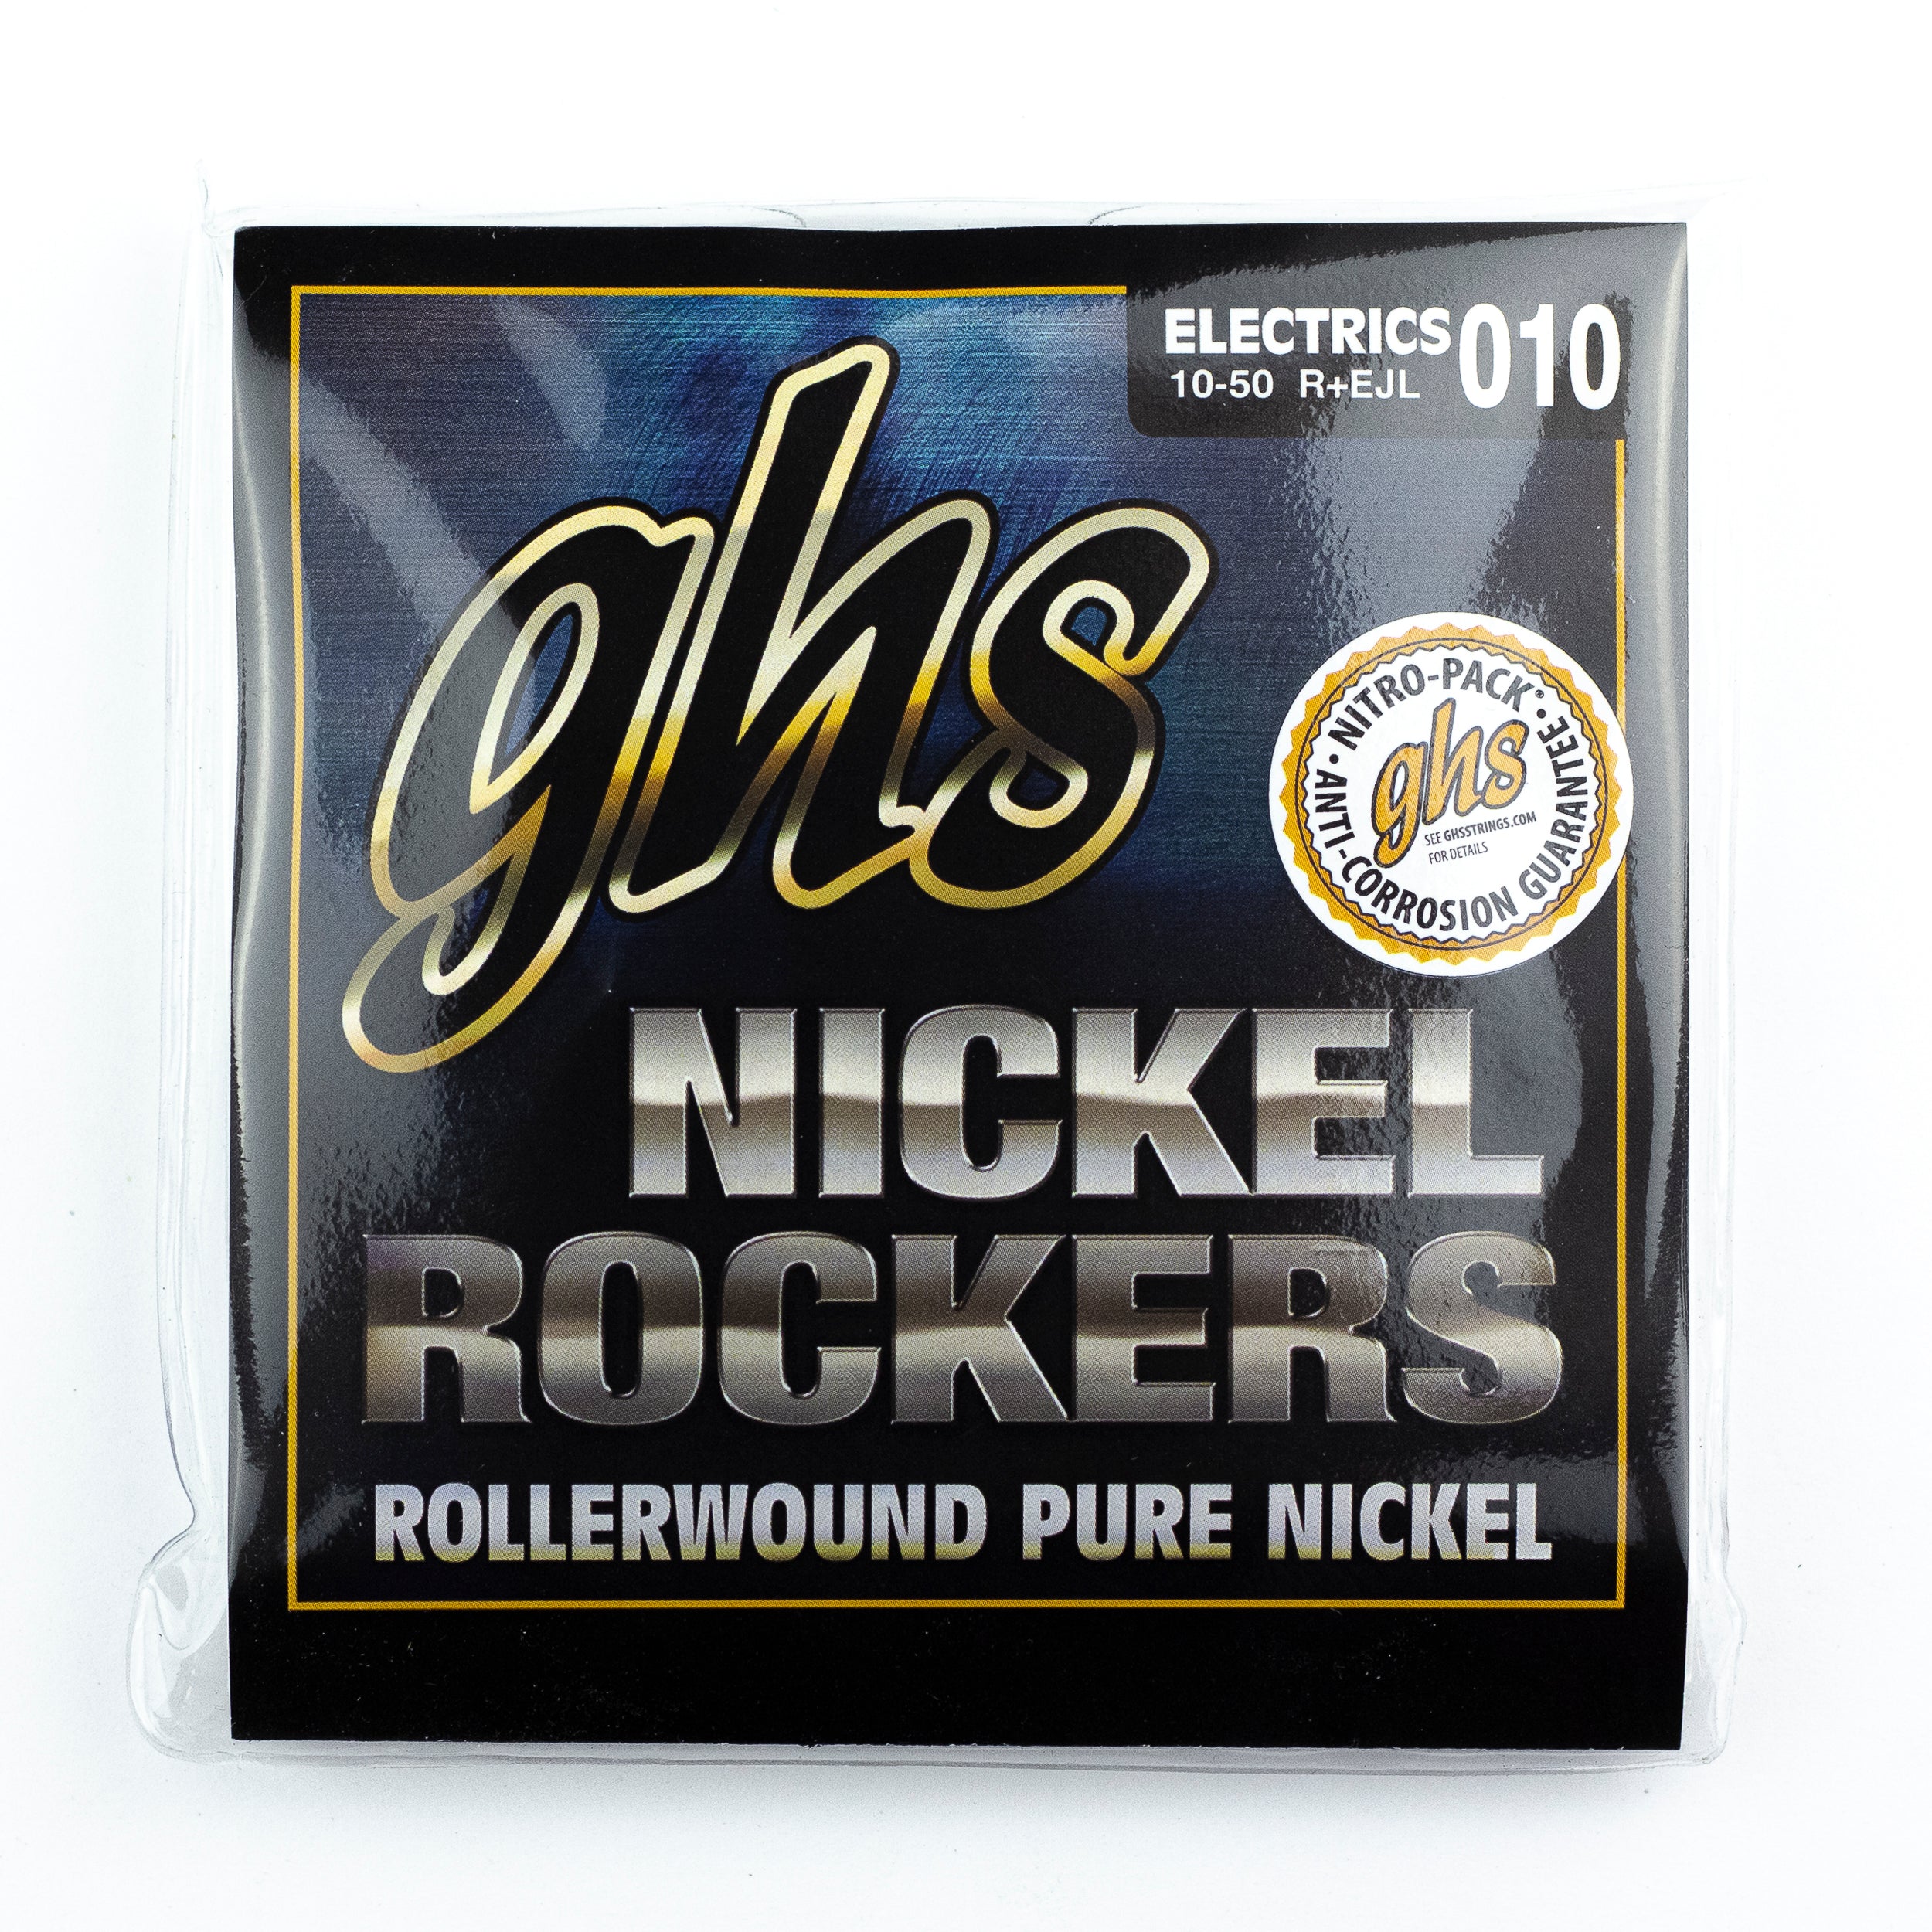 GHS Nickel Rockers Pure Nickel Rollerwound 10-50 Electric Guitar Strings, Custom Light